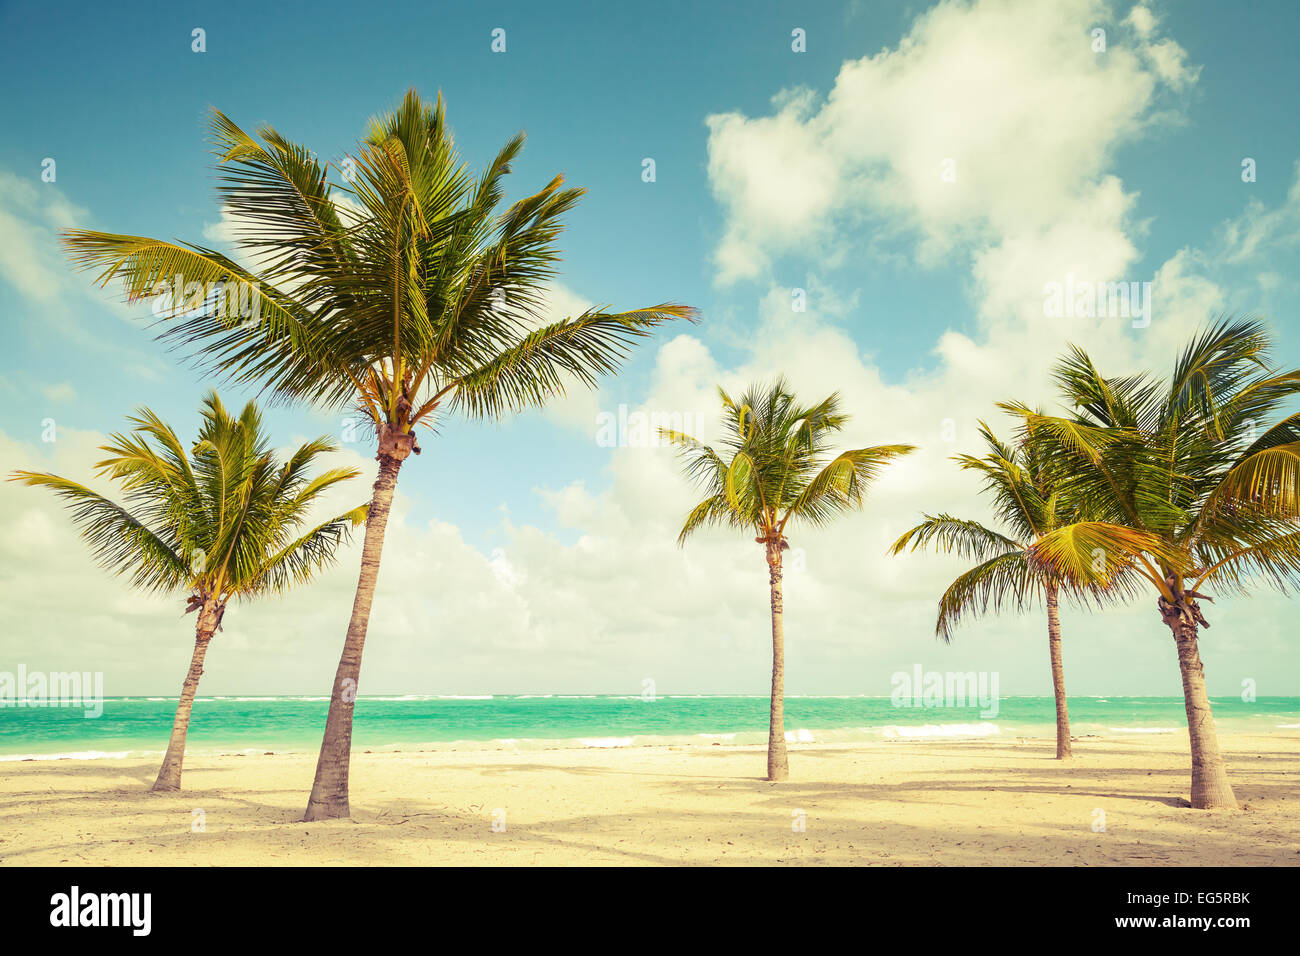 Palmen wachsen auf leeren Strand. Küste des Atlantischen Ozeans, Dominikanische Republik. Vintage-straff-Effekt, alten Stil Farbkorrektur Stockfoto